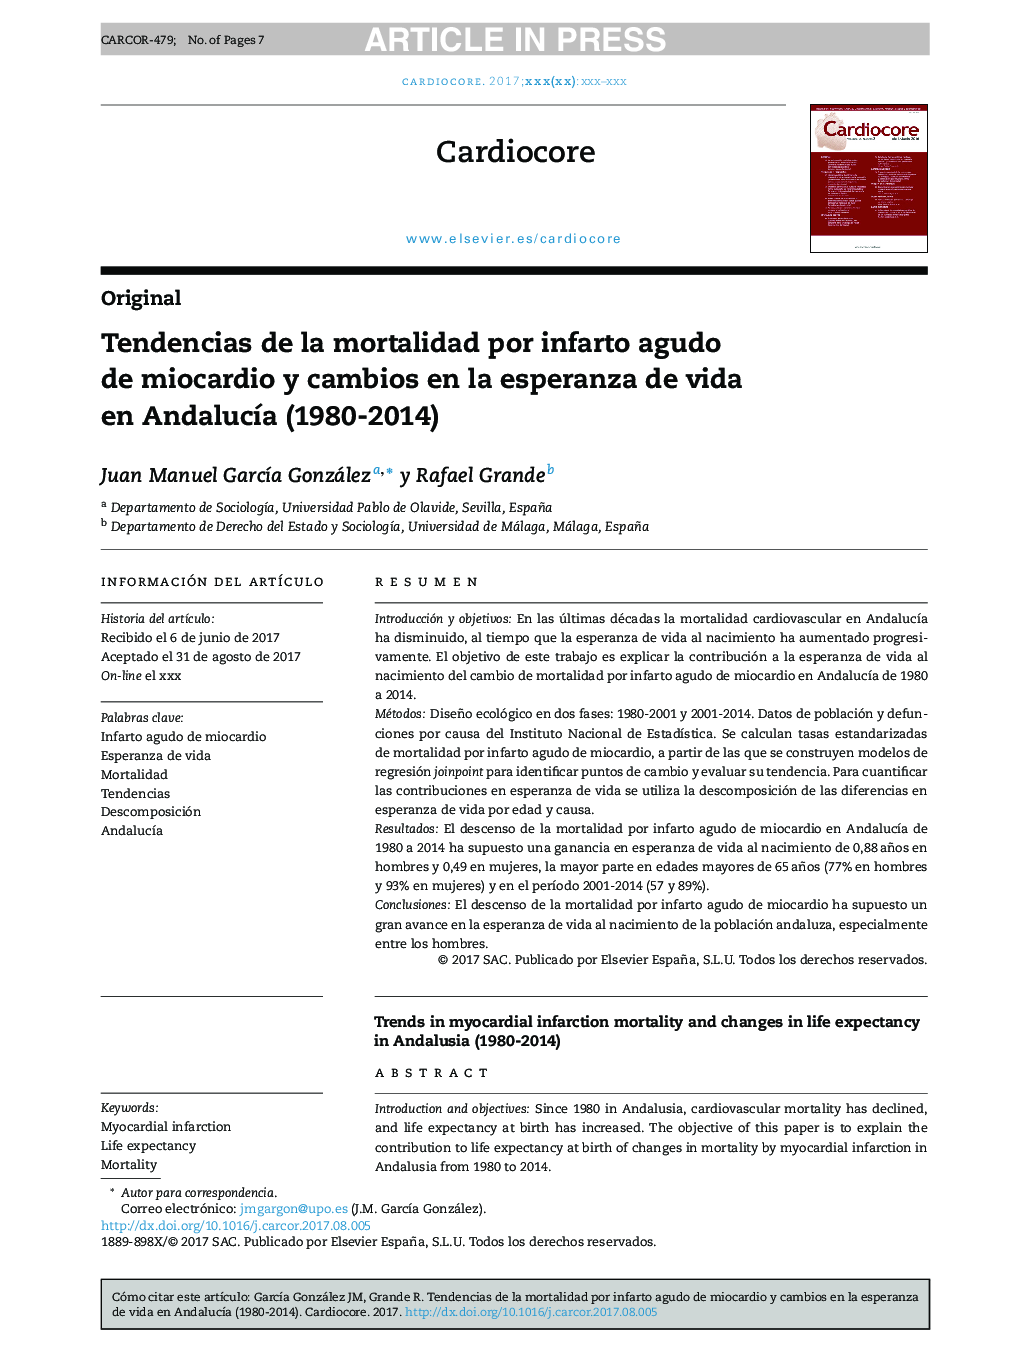 Tendencias de la mortalidad por infarto agudo de miocardio y cambios en la esperanza de vida en AndalucÃ­a (1980-2014)